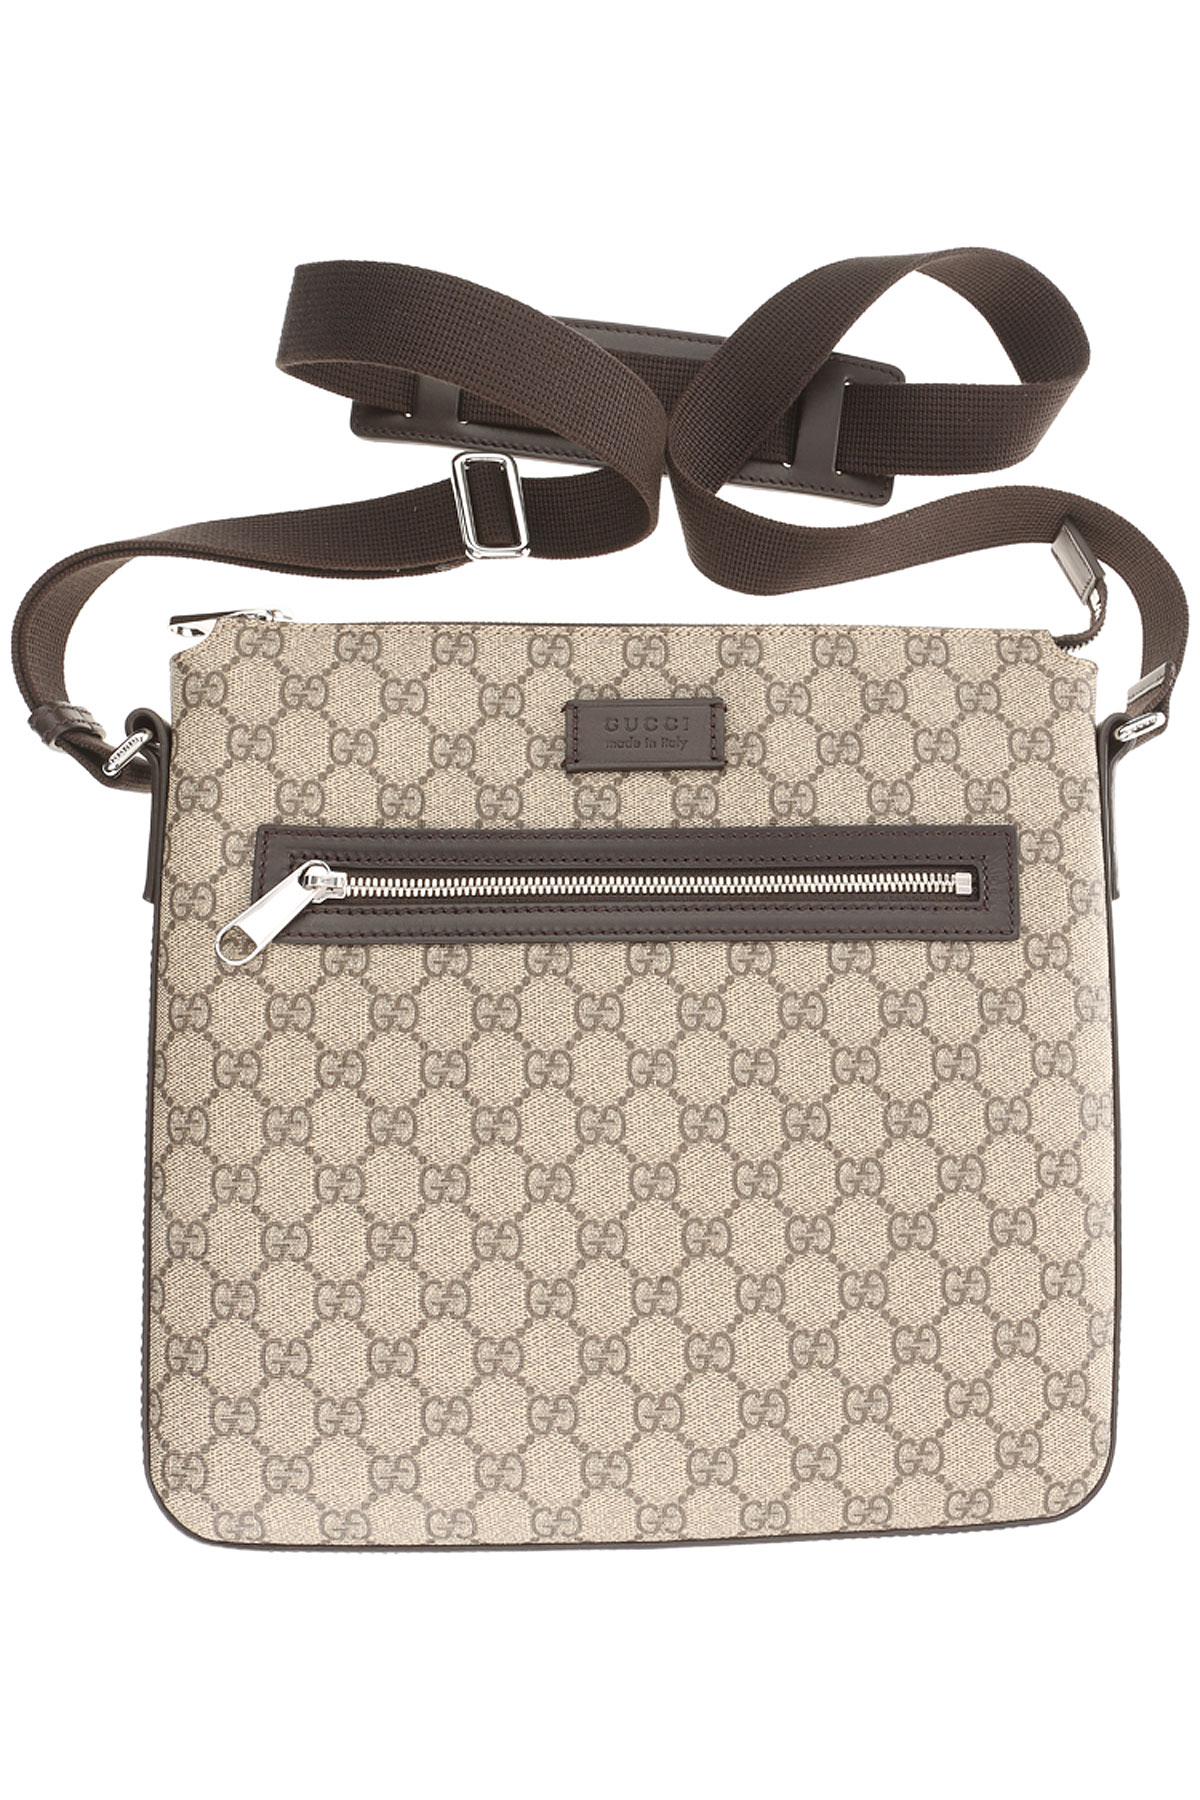 Gucci Leather Messenger Bag For Men On Sale in Beige (Natural) for Men - Lyst